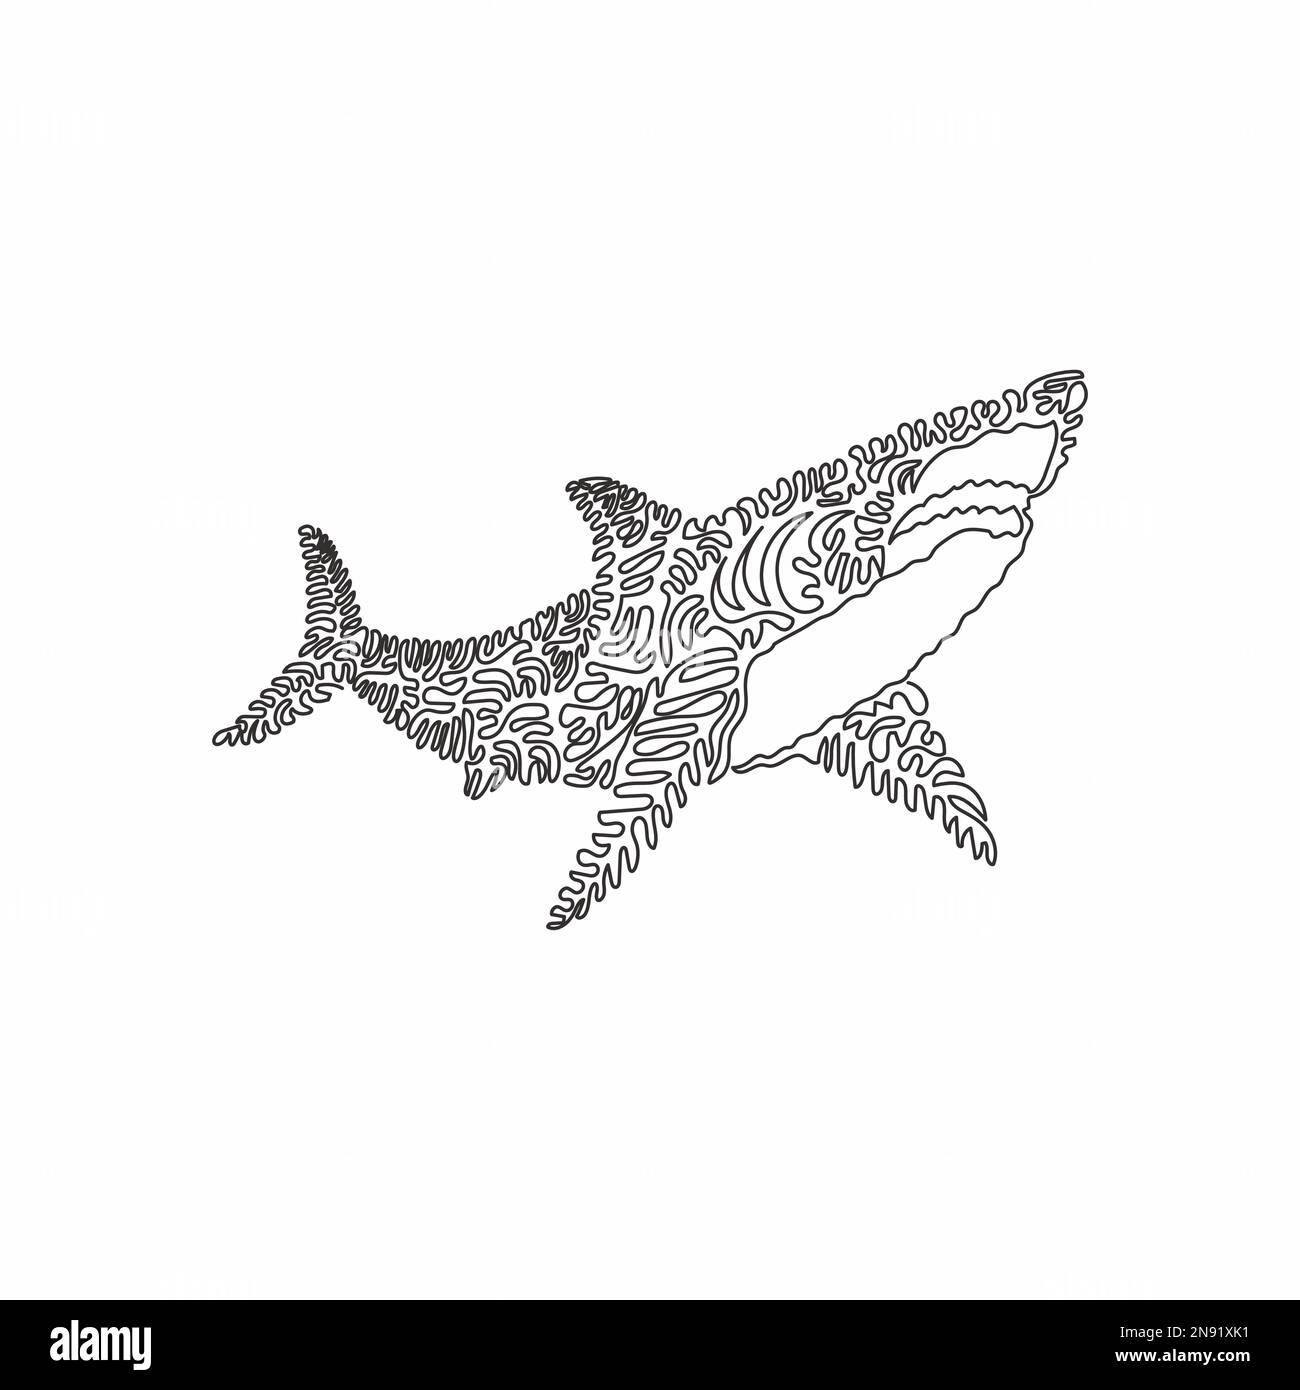 Dessin d'un seul trait d'art abstrait de requin effrayant Dessin en ligne continue dessin graphique illustration vectorielle de requin marin prédateur pour icône Illustration de Vecteur